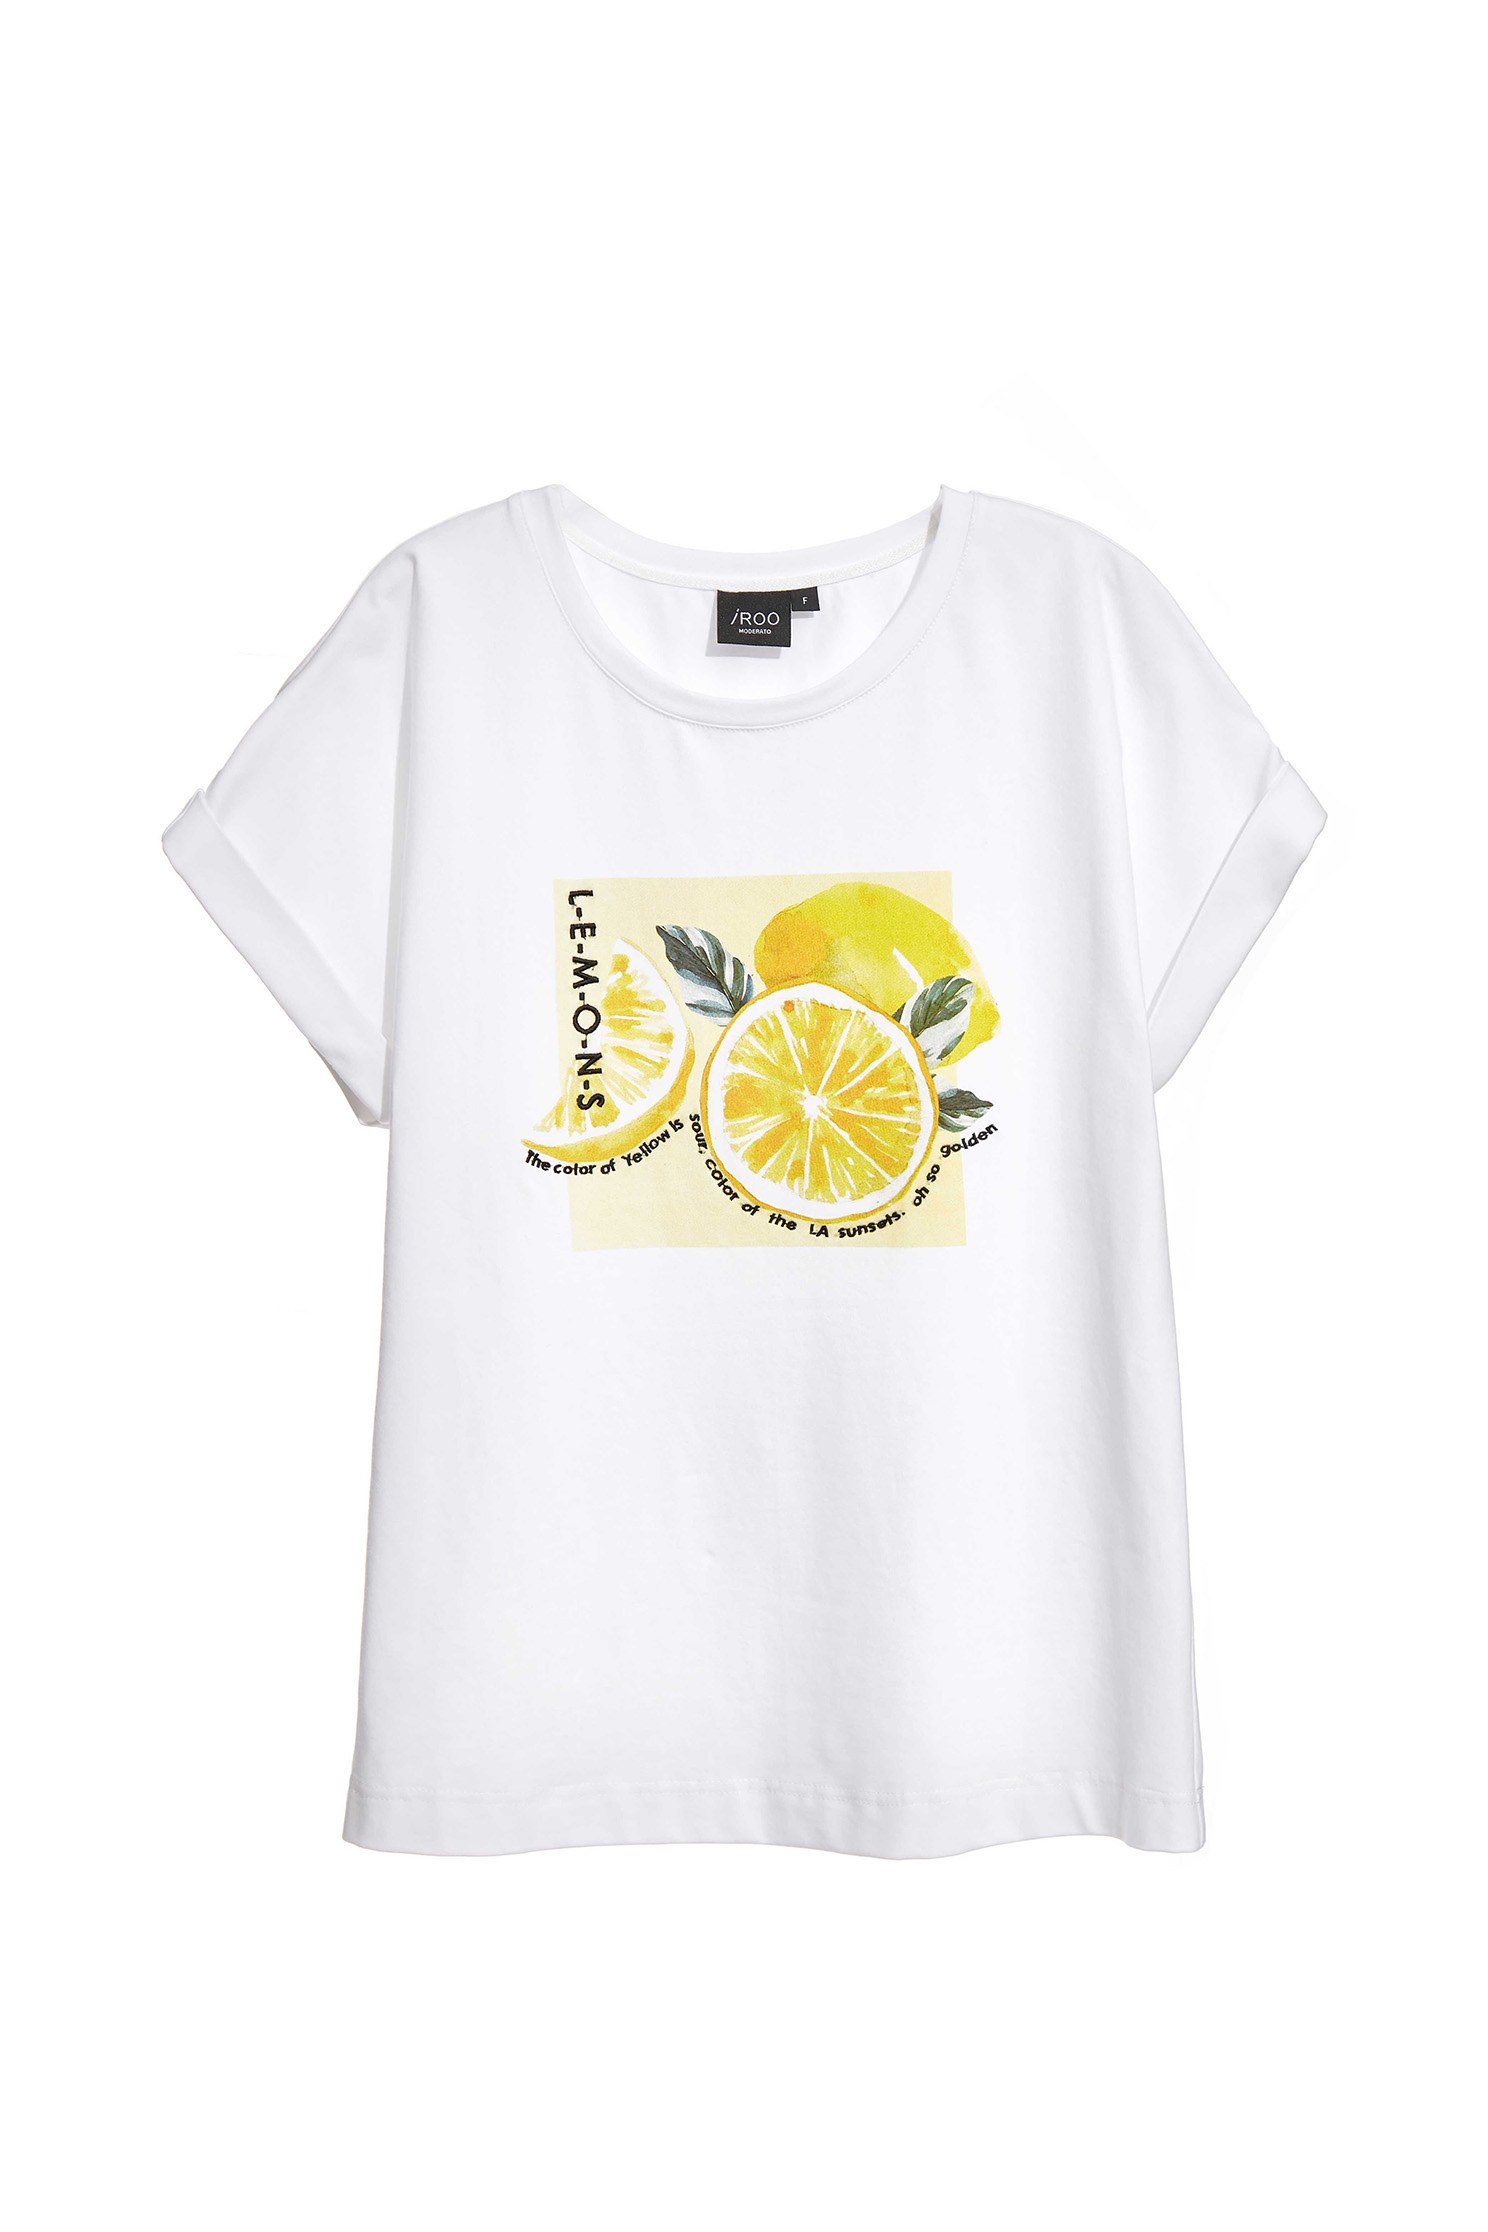 水彩風檸檬圖畫T恤水彩風檸檬圖畫T恤,T-Shirt,T恤,上衣,刺繡,春夏穿搭,純棉,舒適主義